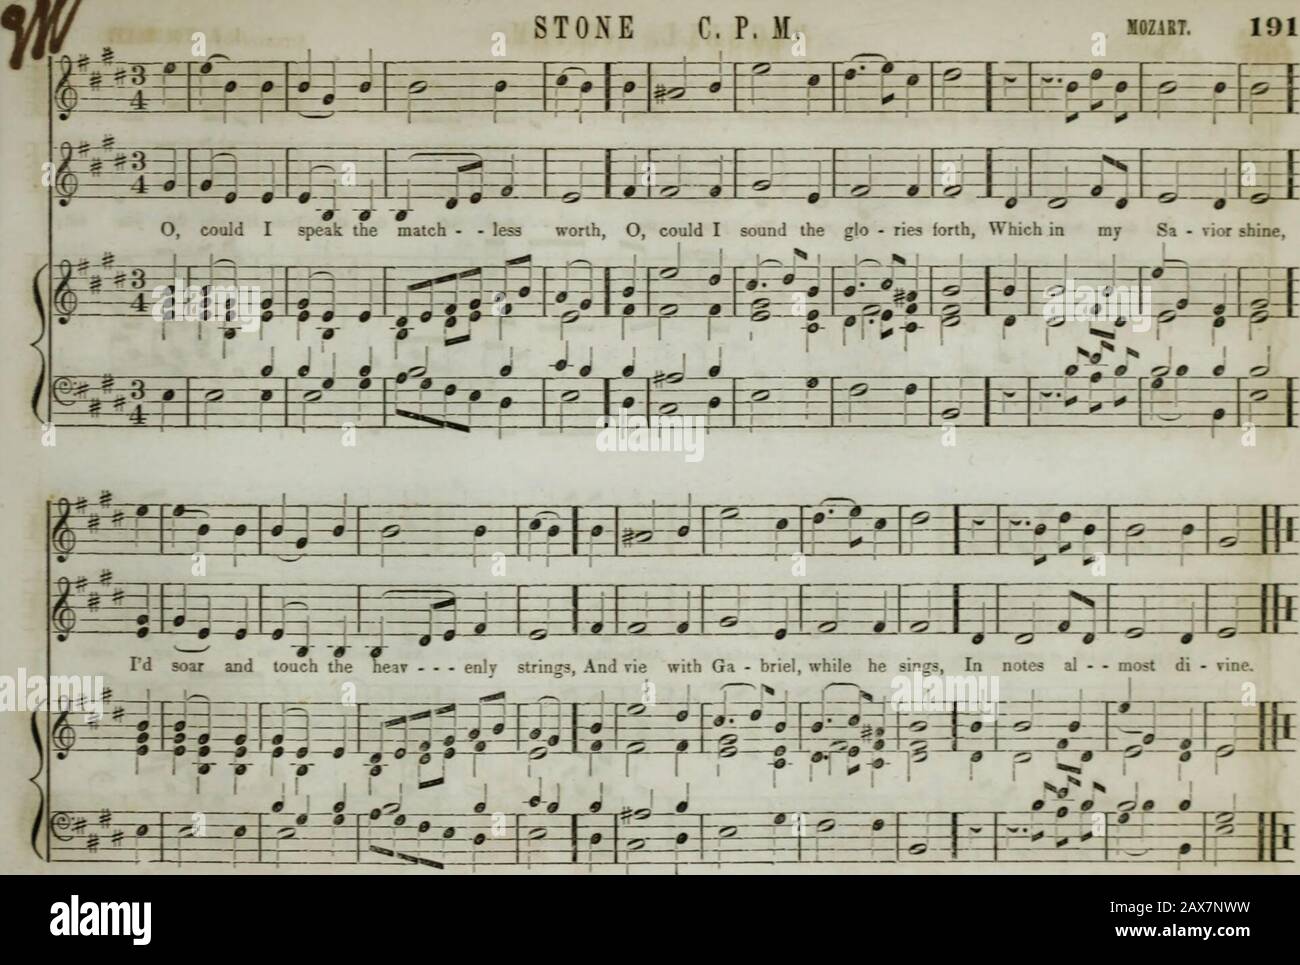 La collection de musique d'église de la Boston Musical Education Society : composée de musiques originales de psaume et d'hymnes, de pièces, de chants et de c.; y compris des compositions adaptées au service de l'Église épiscopale protestante . 192 66 r BAG ne LL, C. P. M. lb. WooDBURf, Yfd i-d-J - -LT-#-f J 1- fcl-^-H^-1—4—1- i 1 J j—L i—h j L^-n U— H— 1 Ye deeps, avec roar - - ing bil - - - Iowa Rise, pour rejoindre le thun - - - - - - - - - les skins as : Louange Sim qui vous offre rouleau éclairé; IP? 1 r Pi lrAf-i J H«-L—r- - -S-THH—| i— -M—— 1 1 •f- ^fanlH^ ? ?V^ -J - r*4 -v^4 p ? LR W -W=*5 F 1 1 1 Ses louanges dans soft - er i 1 Banque D'Images